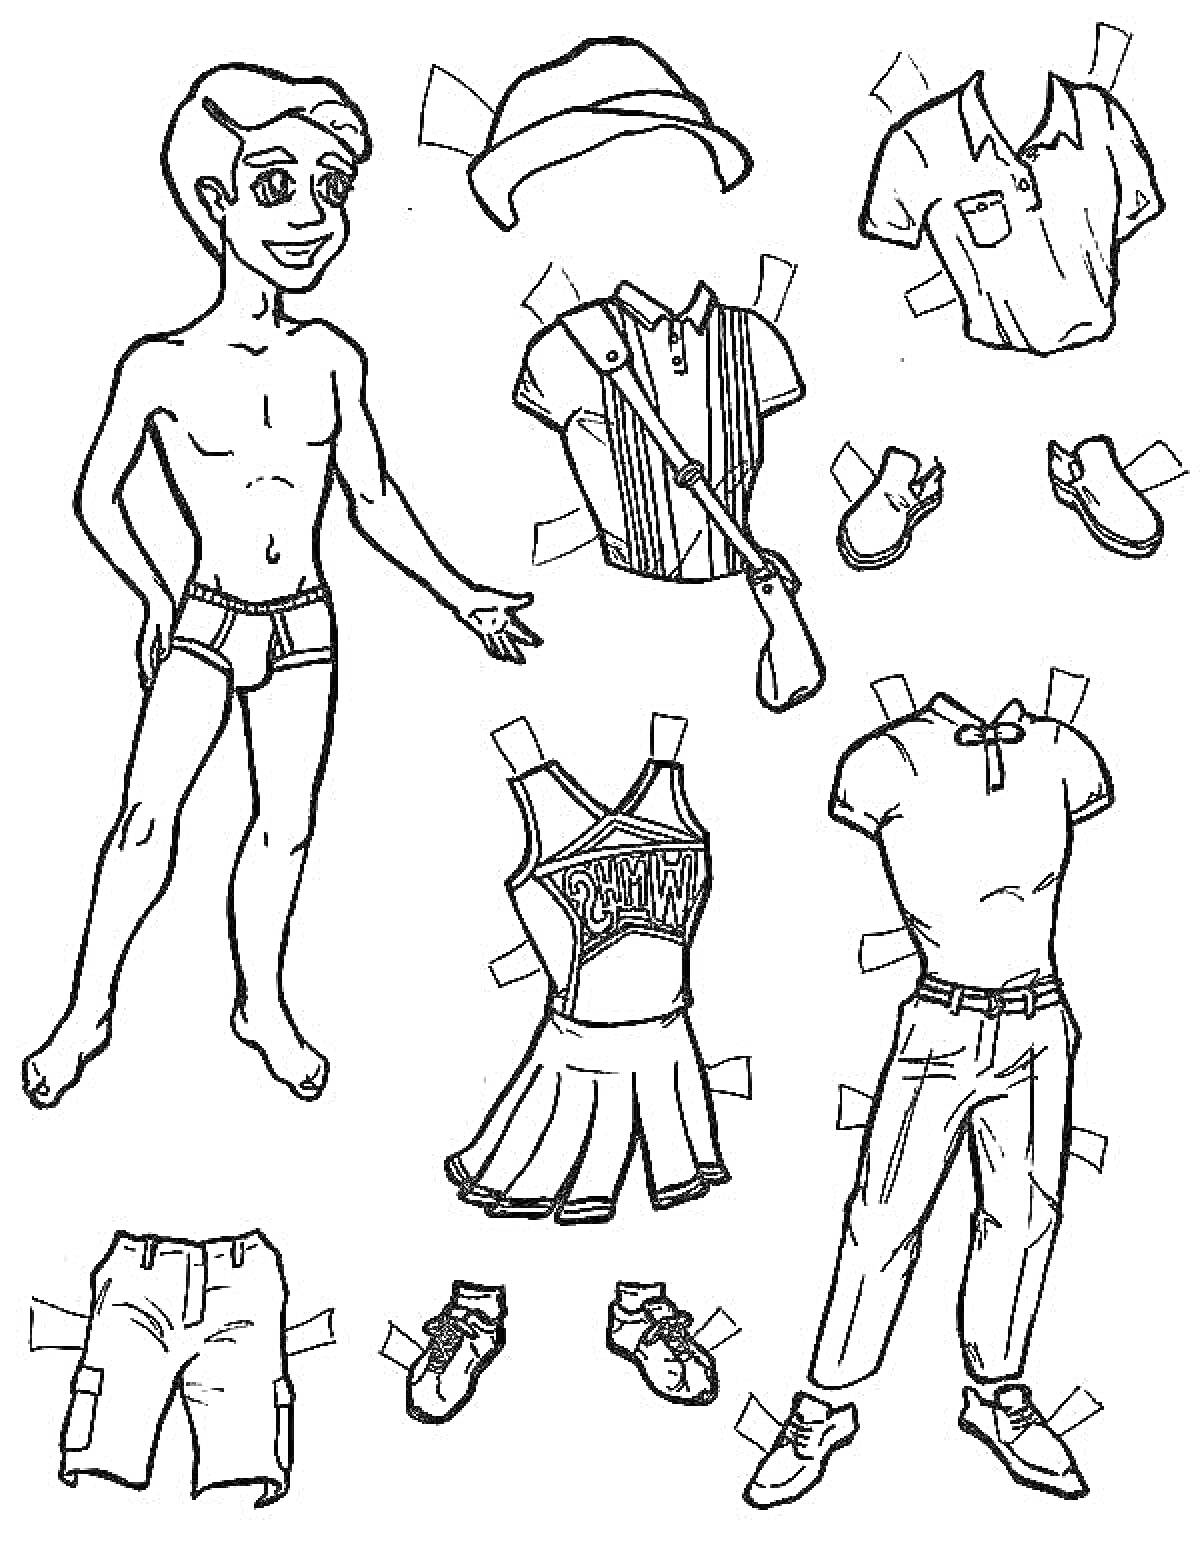 Раскраска Человек с одеждой: головной убор, рубашка с короткими рукавами, рубашка поло, шорты, брюки, кроссовки, платье, футболка, сандалии